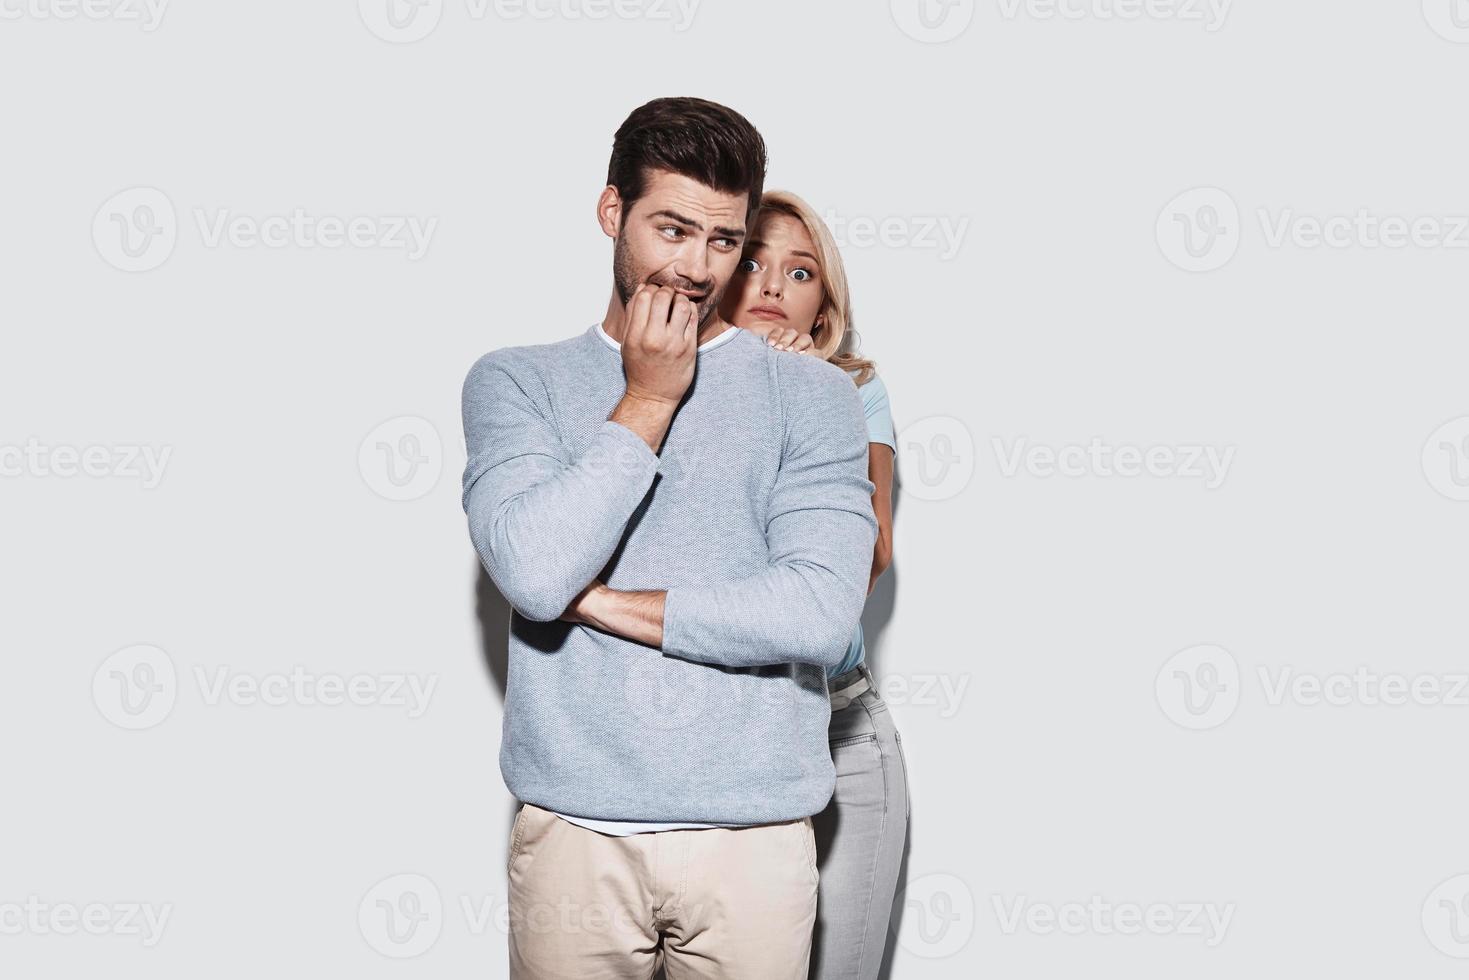 inquiet de quelque chose. jeune couple terrifié faisant une grimace en se tenant debout sur fond gris photo